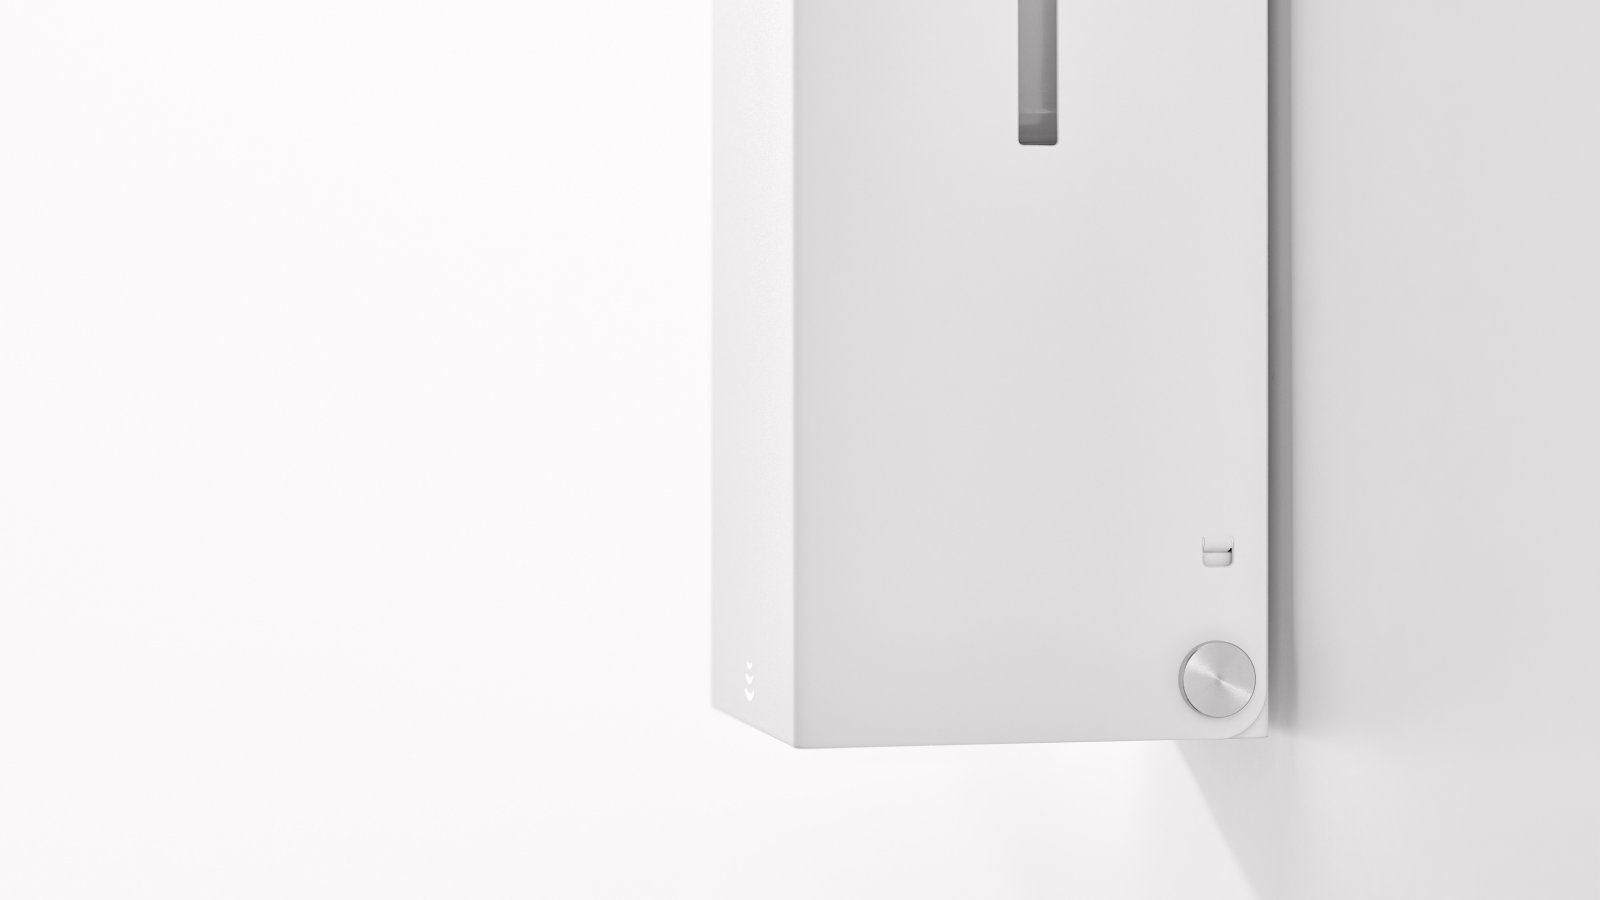 Touchless soap dispenser with angular design in matt white stainless steel colour